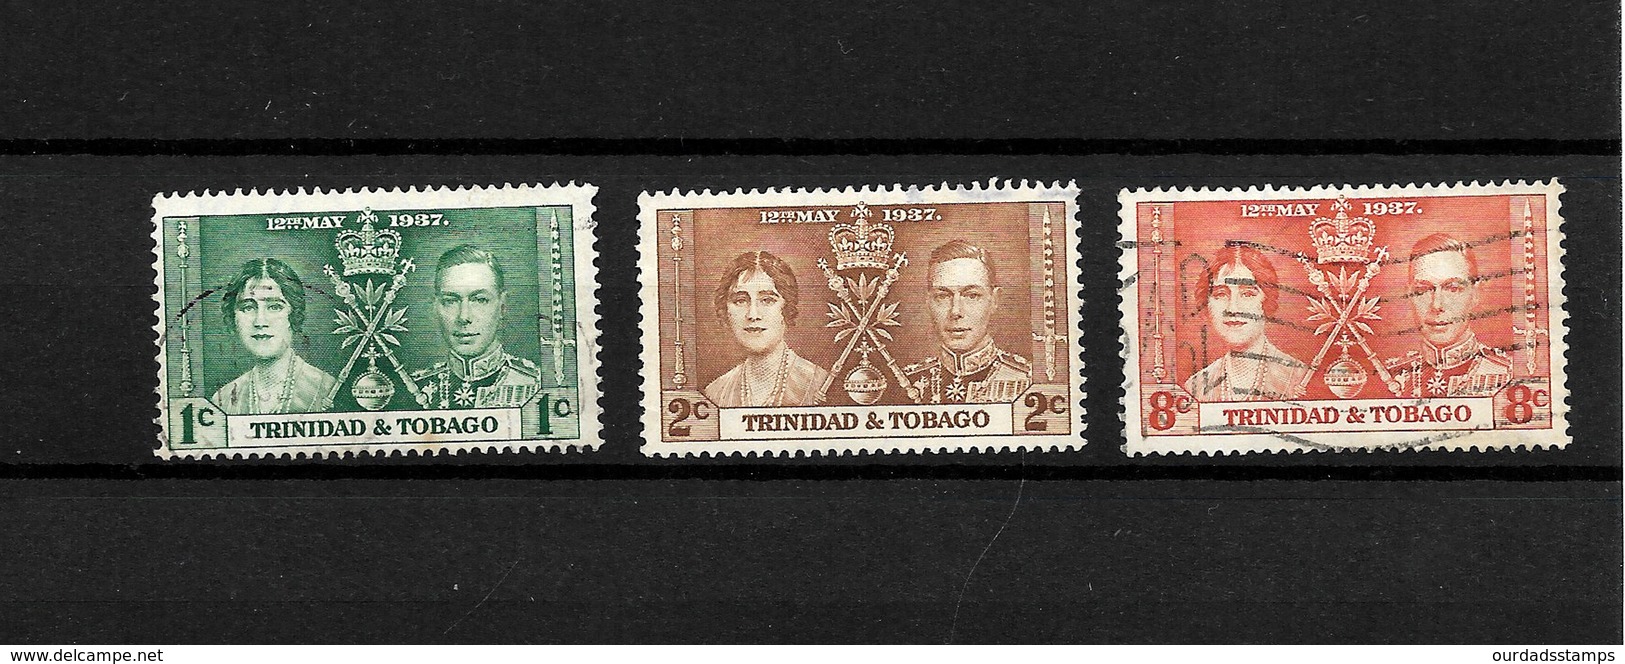 Trinidad & Tobago KGVI 1937 Coronation, Complete Set Used (7132) - Trinidad & Tobago (...-1961)